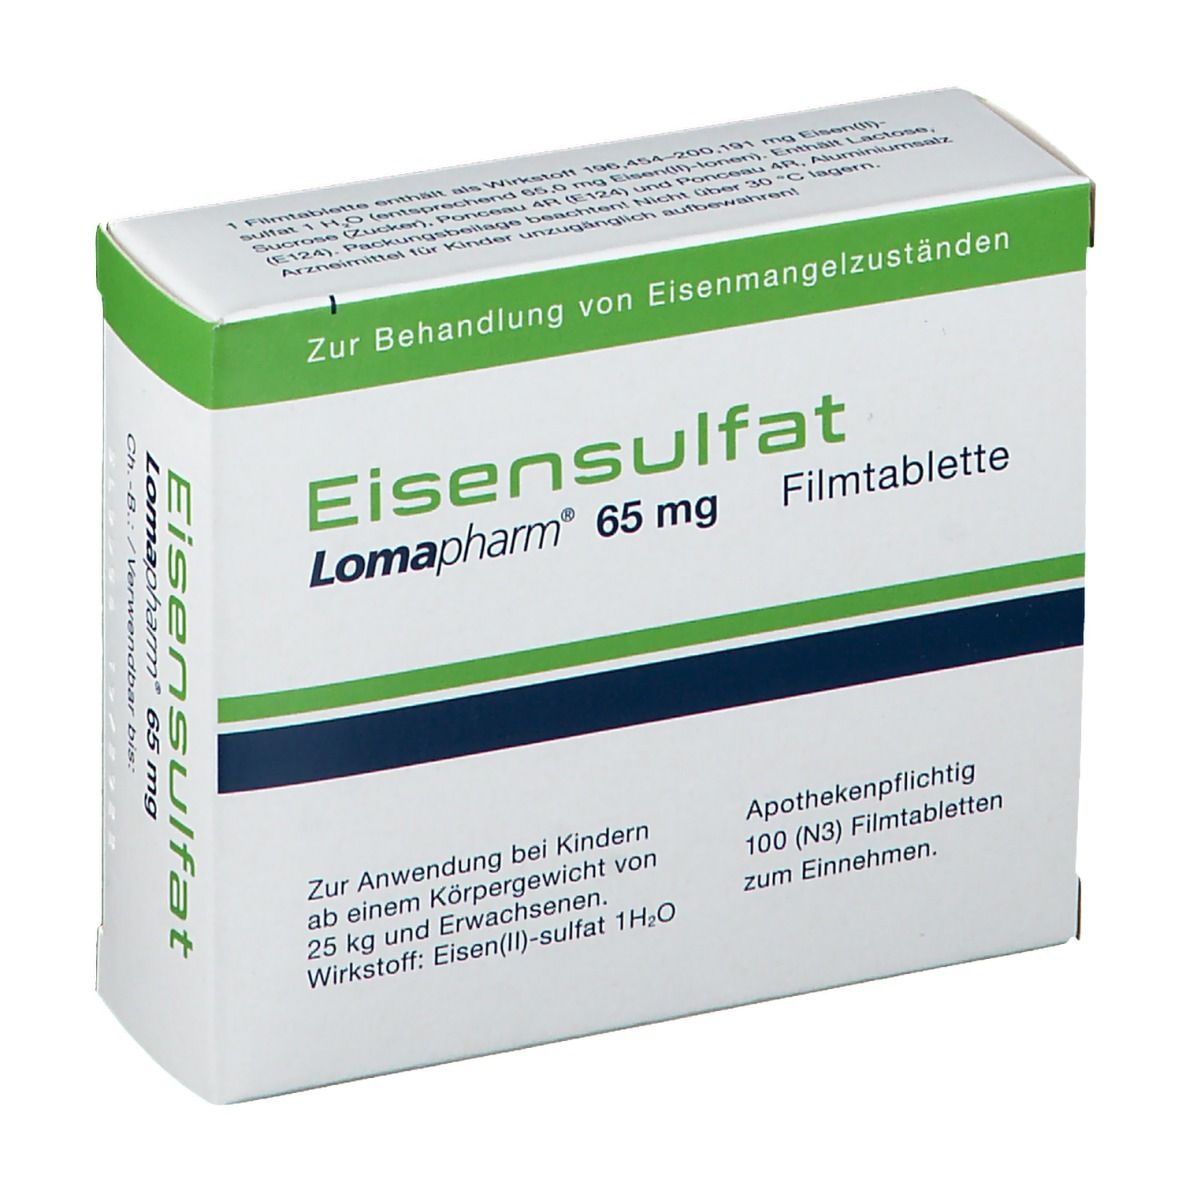 Eisensulfat Lomapharm 65 mg Tabl.ueberzogen